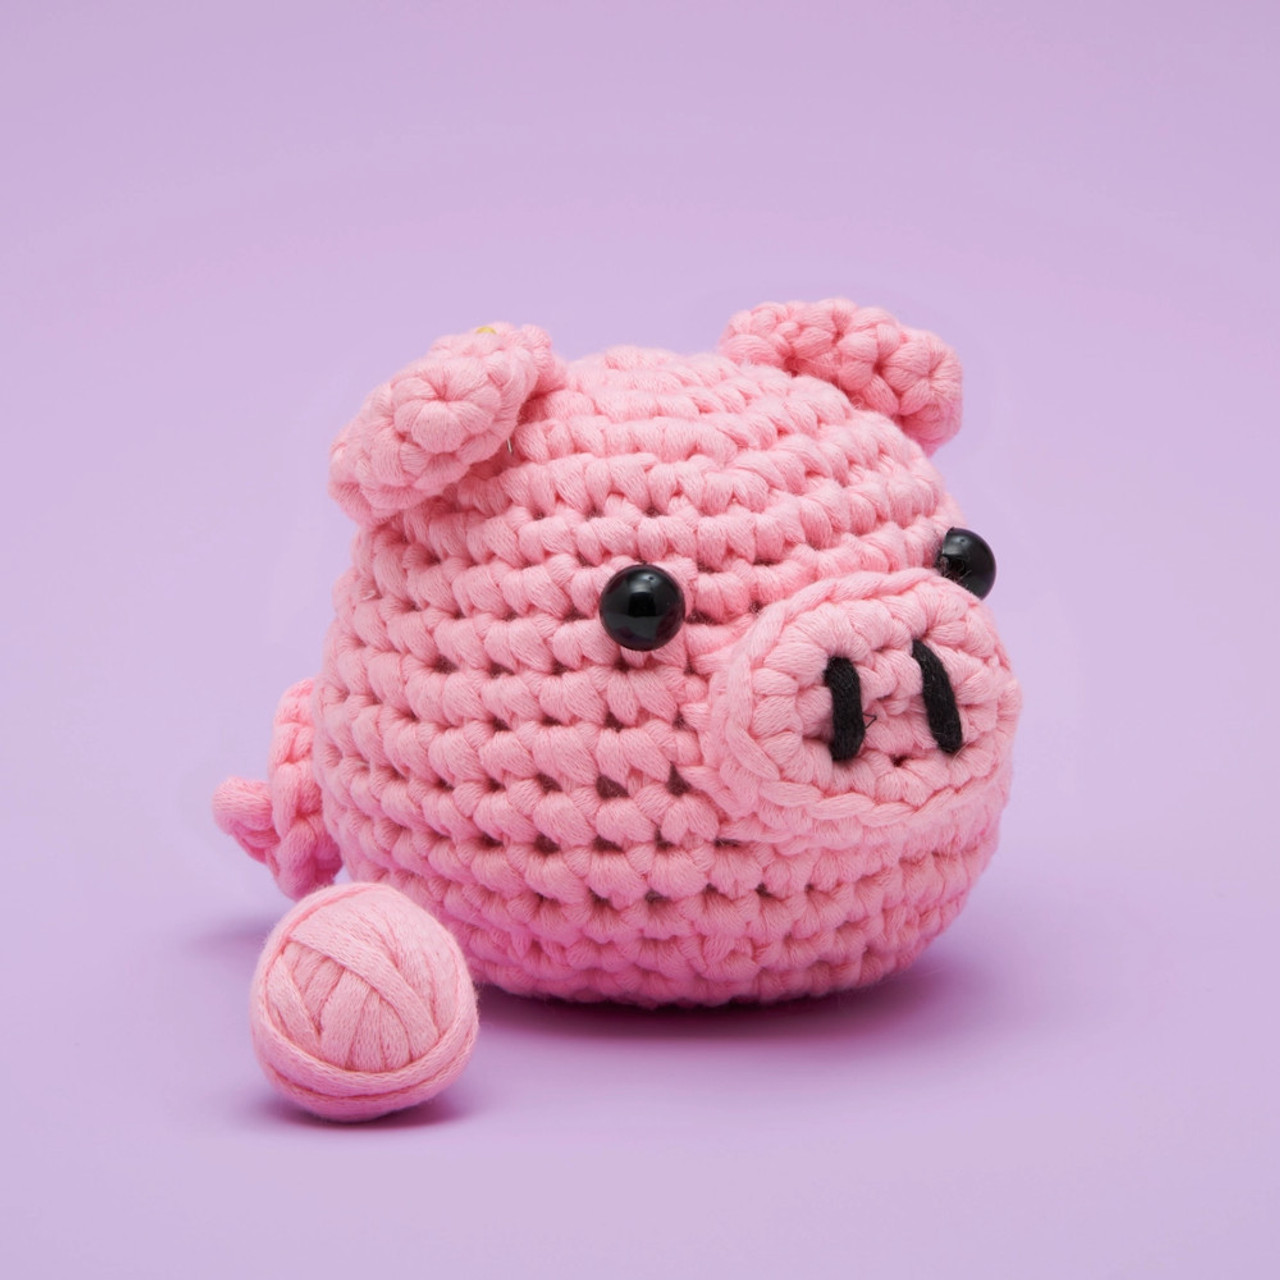 The Woobles - Bacon The Pig Beginner Crochet Kit